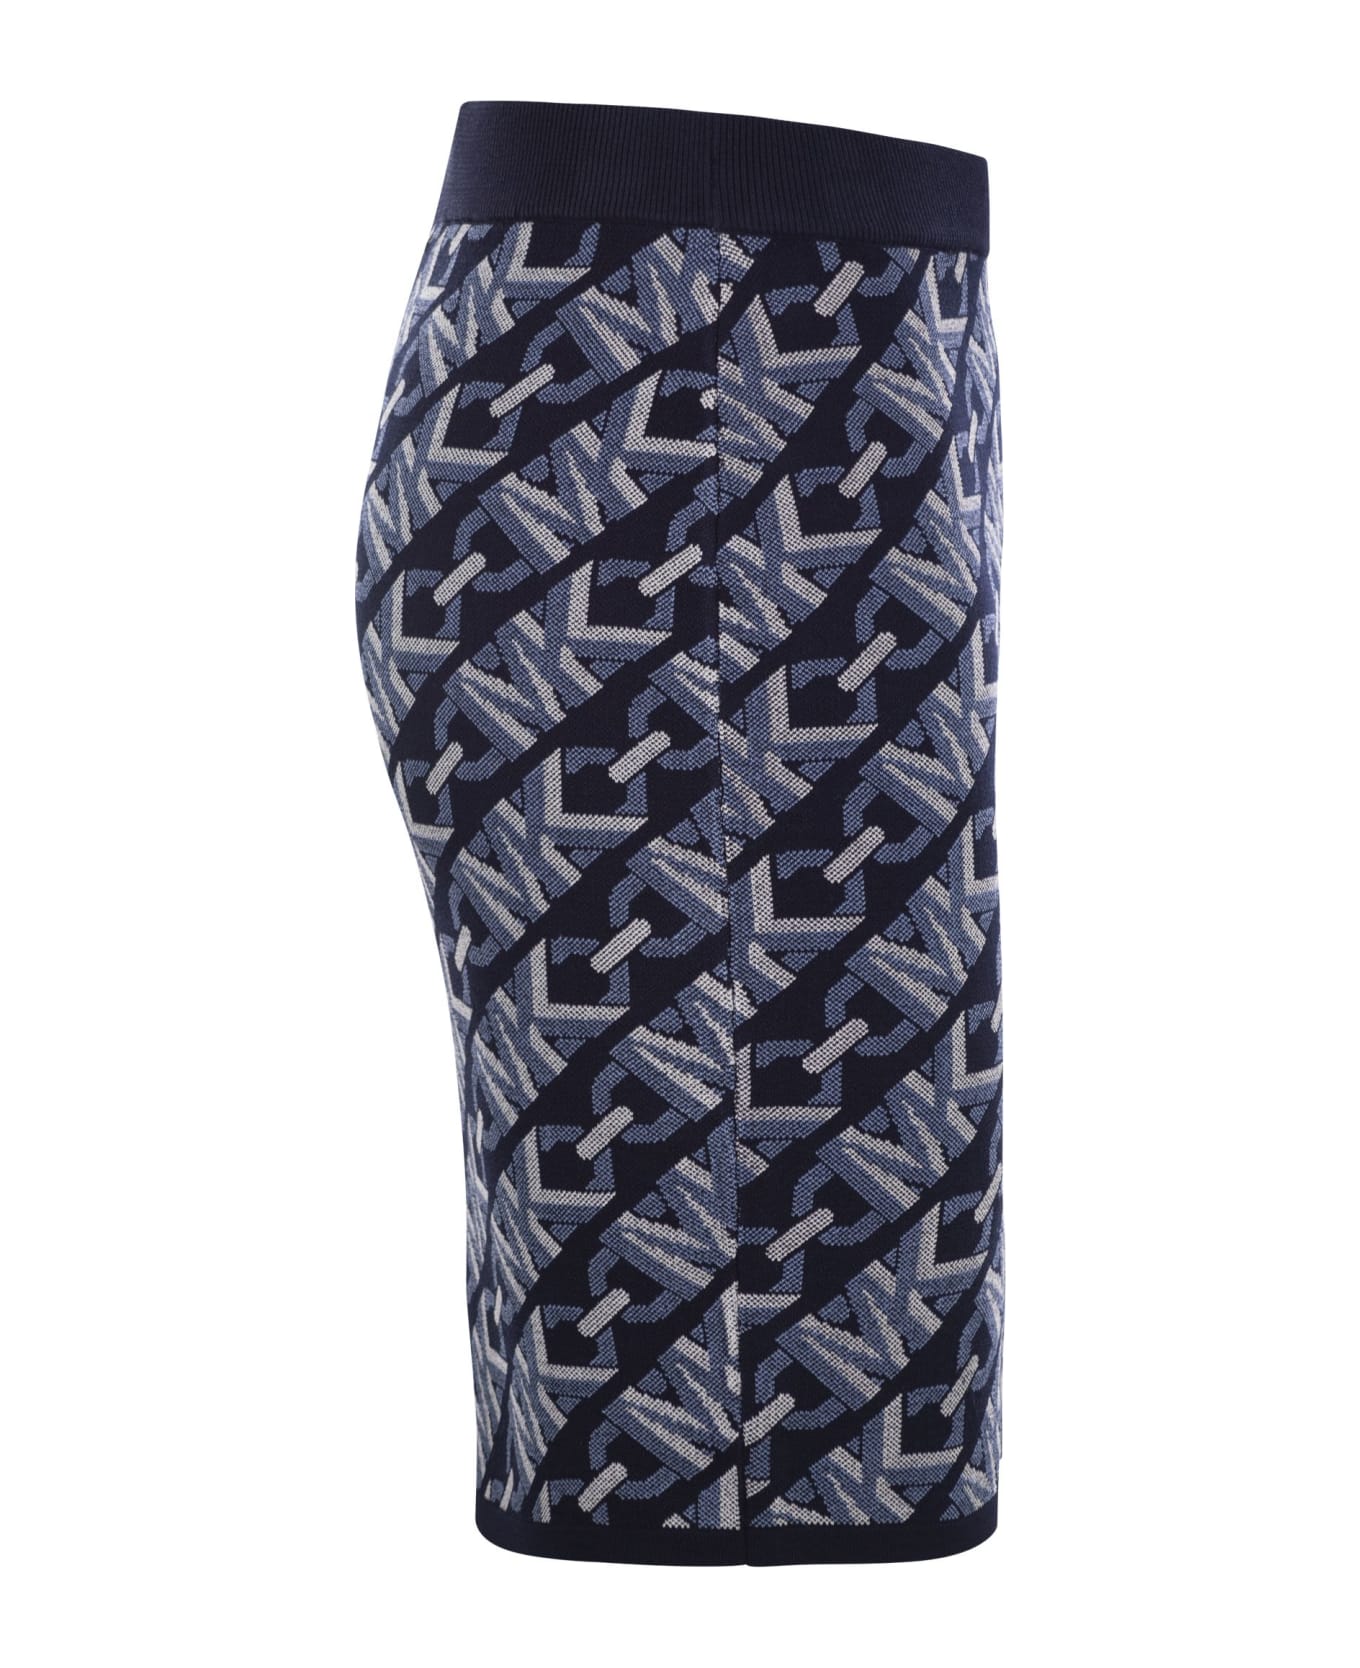 Michael Kors Jacquard Knit Skirt - Blue